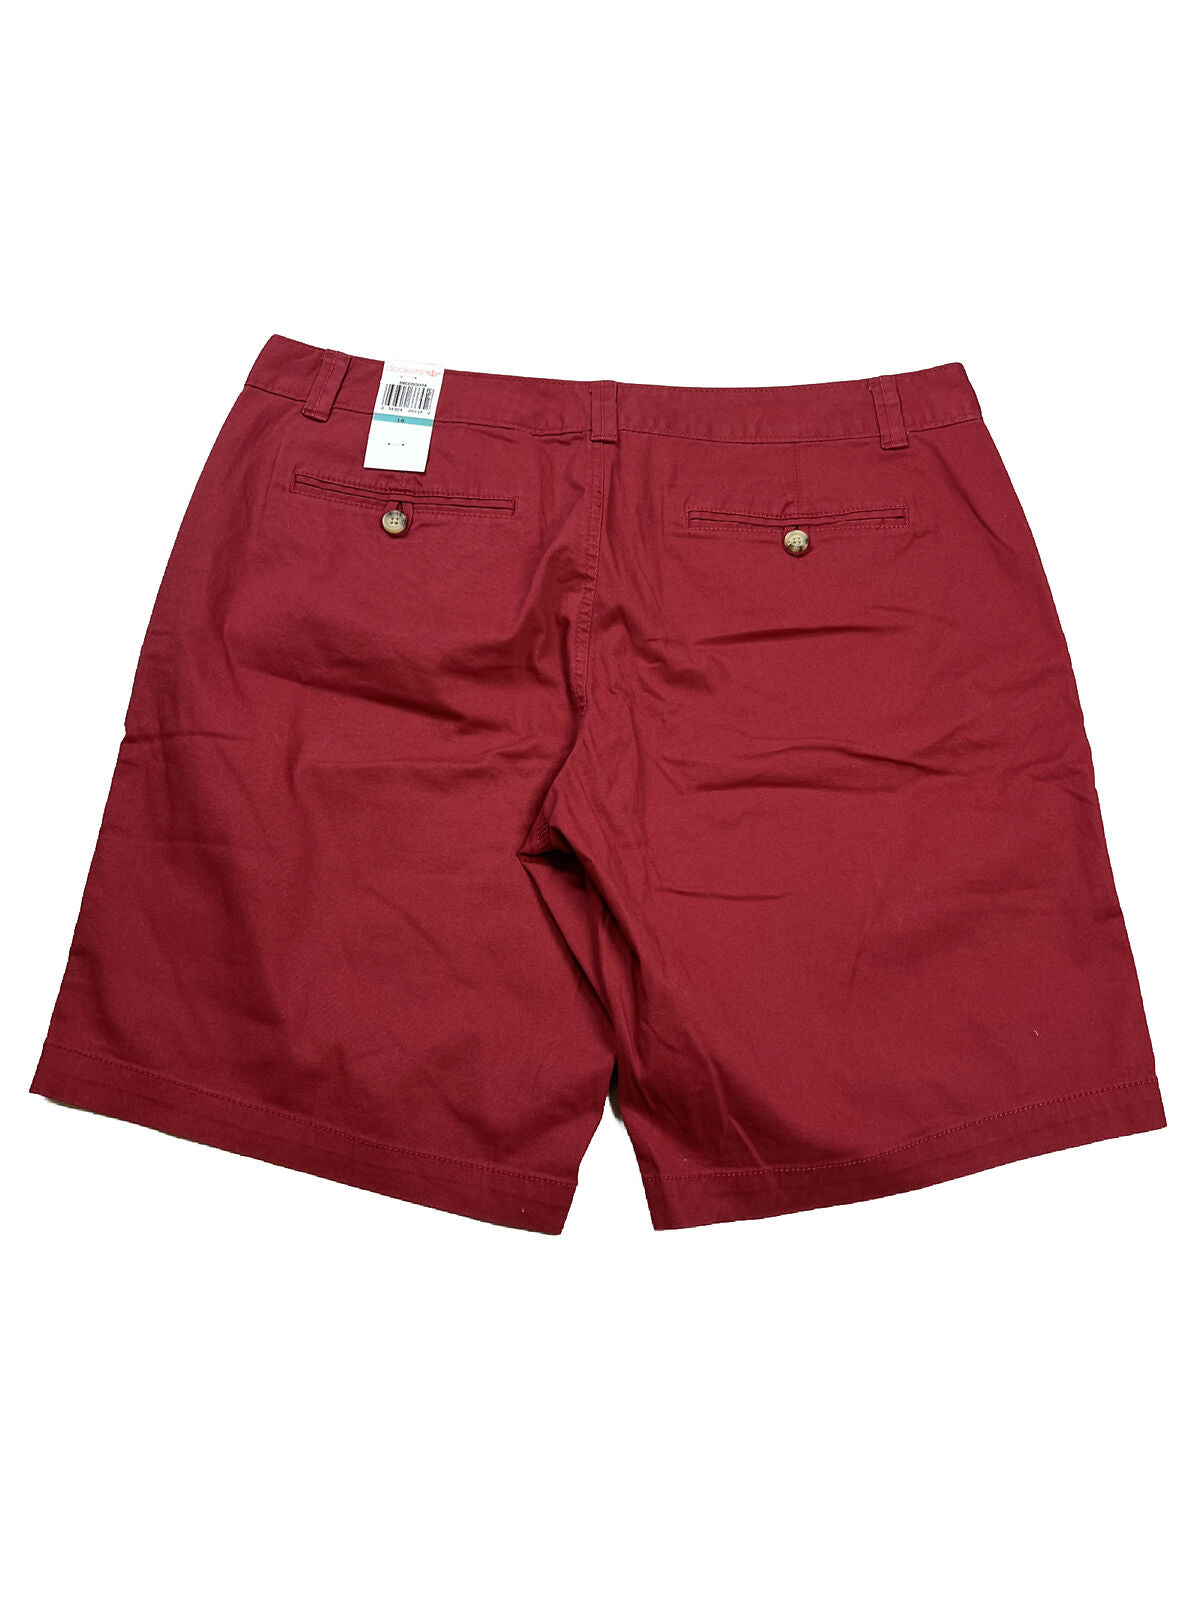 NUEVOS pantalones cortos color caqui rojos verdaderamente adelgazantes de Dockers para mujer - 16